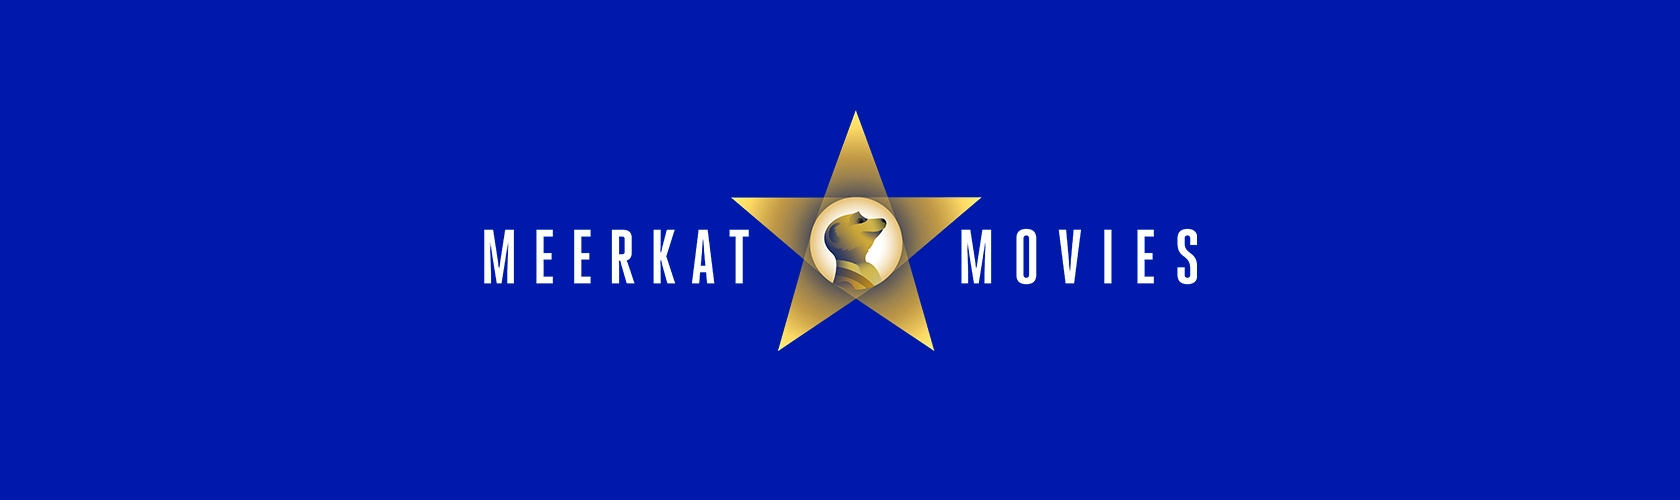 Meerkat Movies